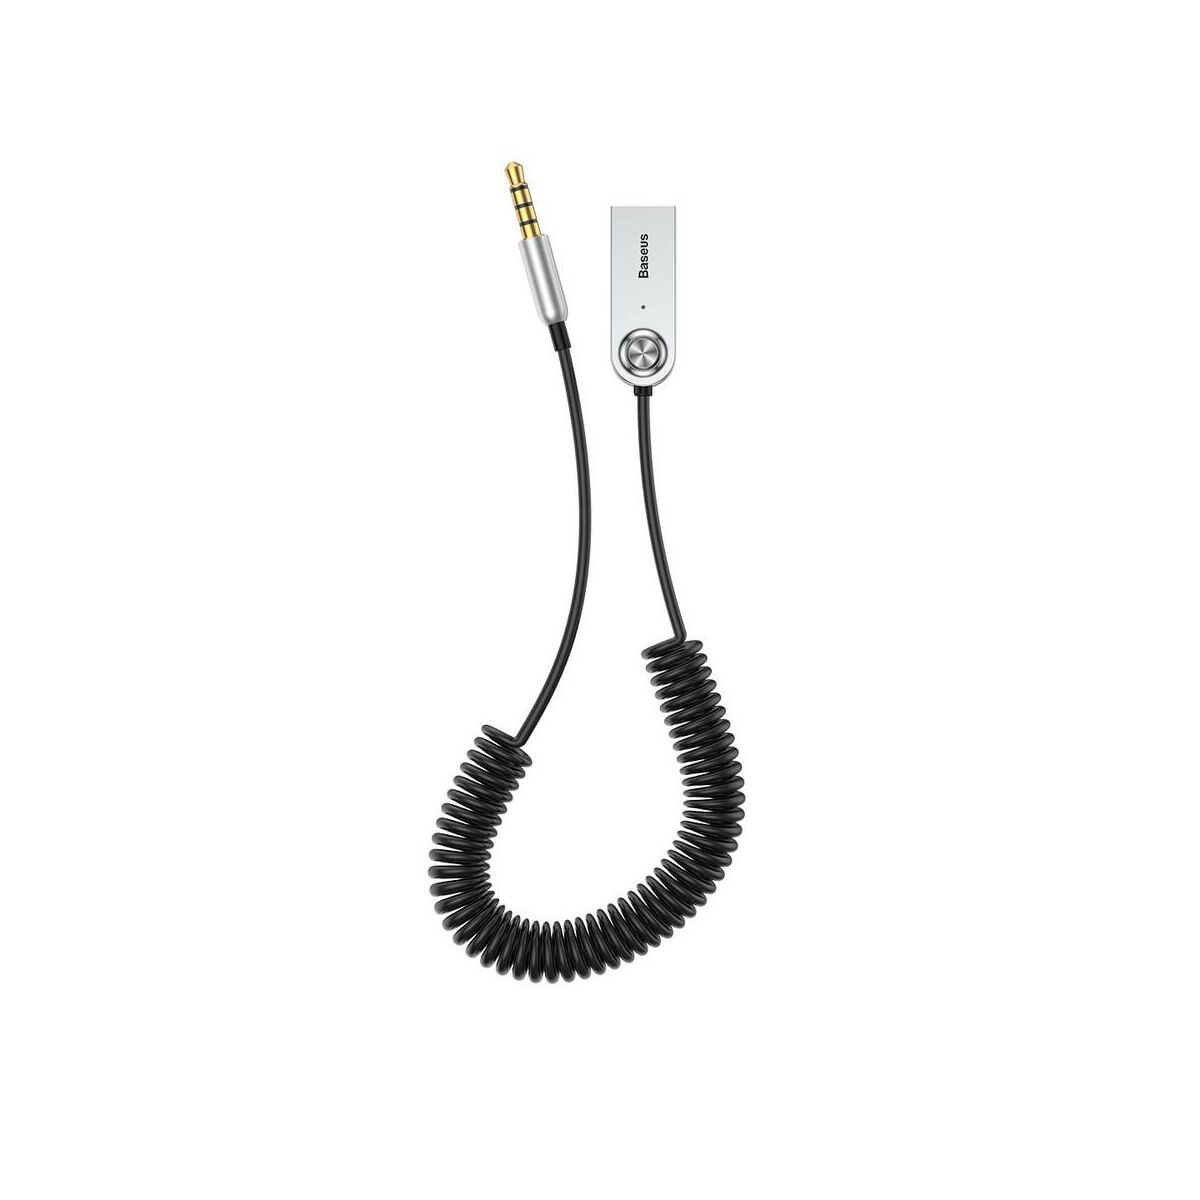 Baseus átalakító kábel, BA01 USB + vezeték nélküli adapterről 3.5 mm Jack bemenetre, fekete (CABA01-01)